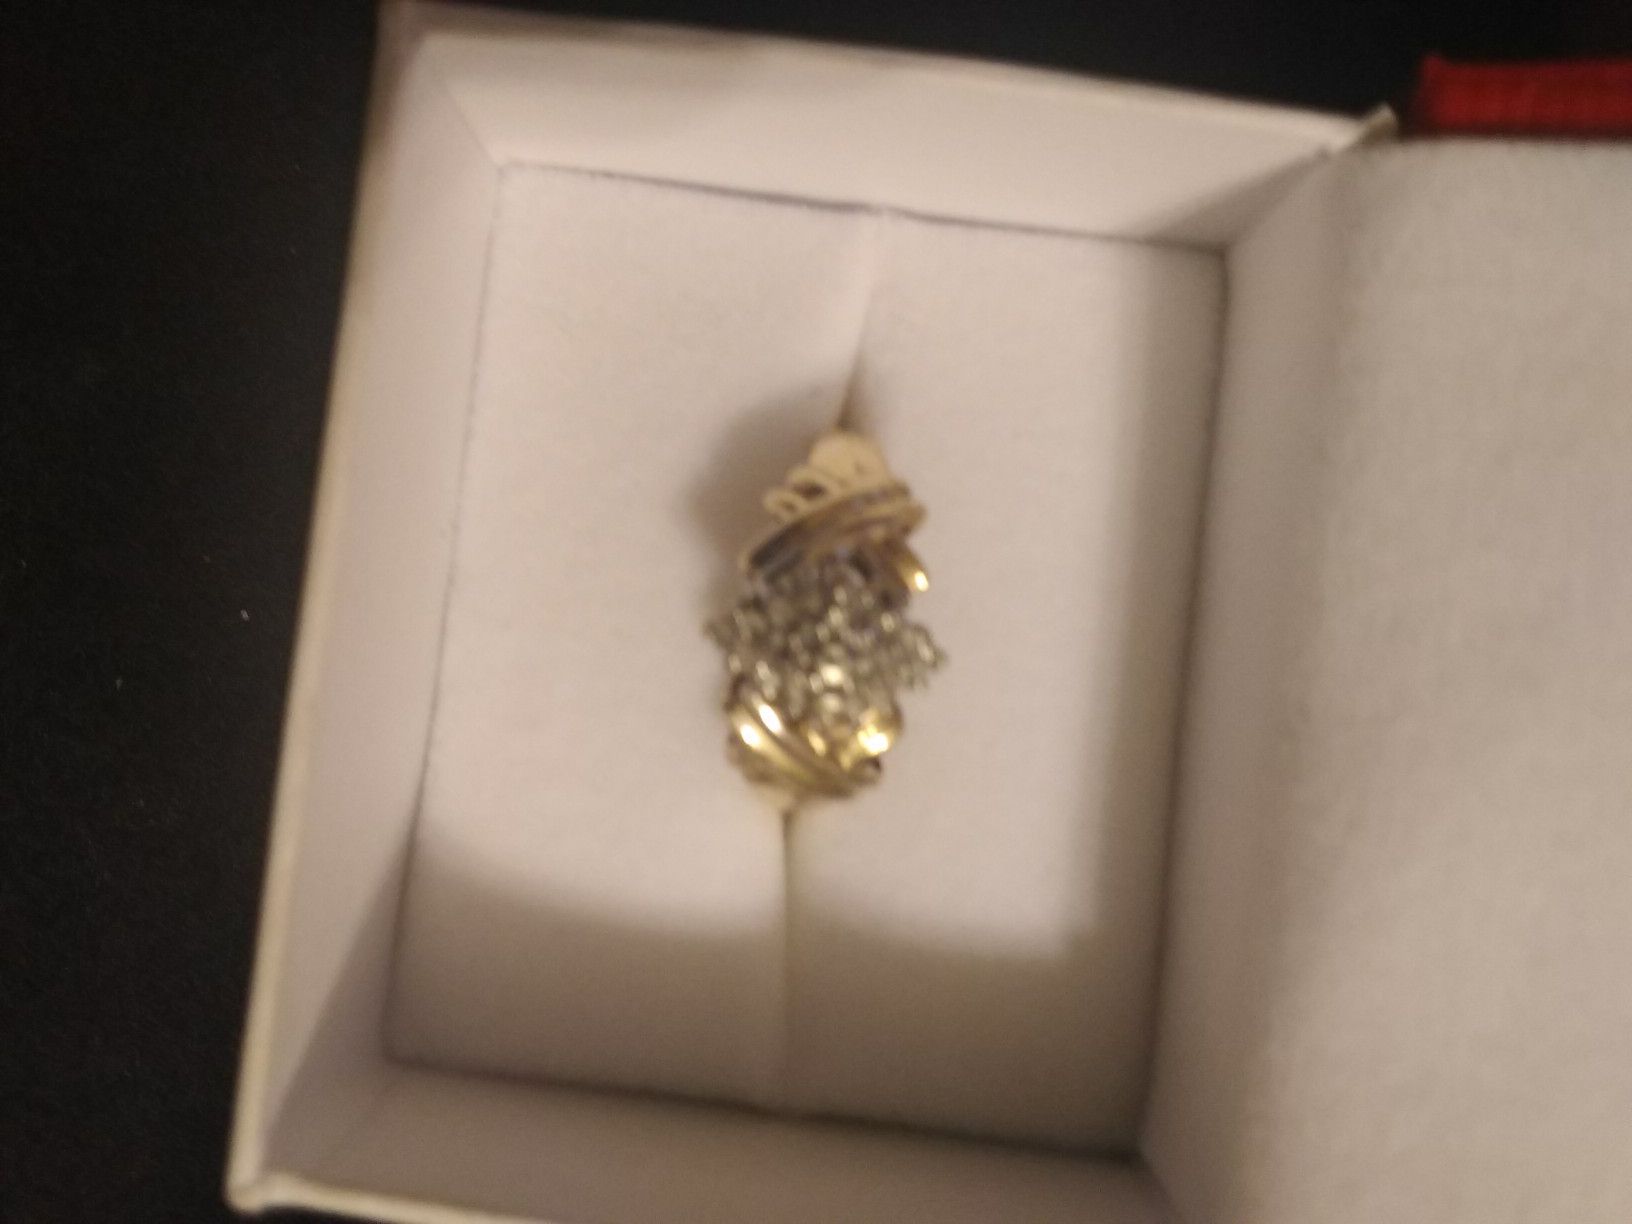 14 karat gold diamond ring $120